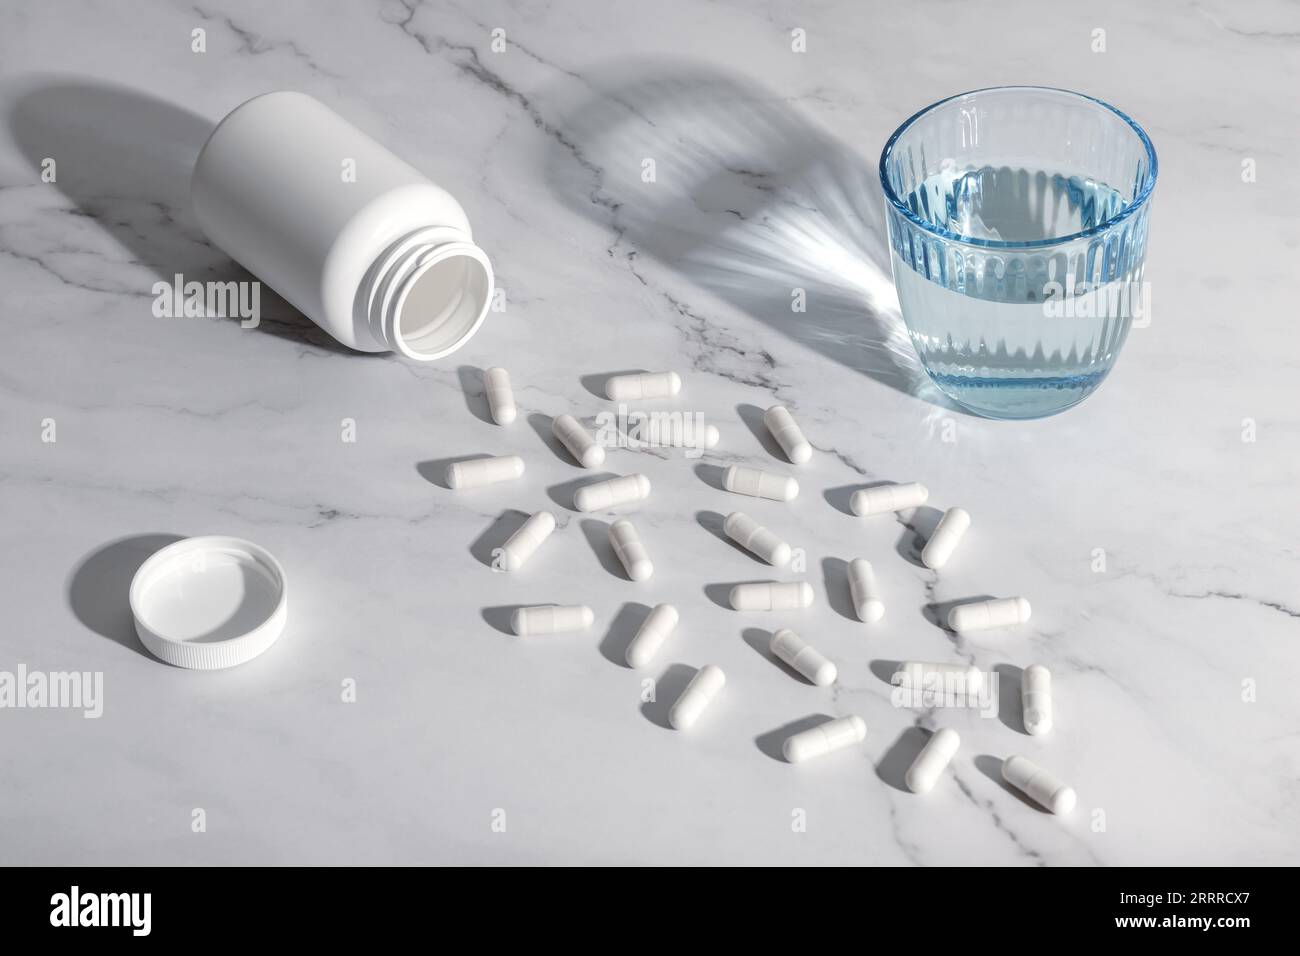 Weiße medizinische Pillen und ein Glas Wasser auf einem grauen Marmortisch Hintergrund. Stillleben mit harten Schatten. Ein Haufen verstreuter Kapseln. Gesundheitsfürsorge konc Stockfoto